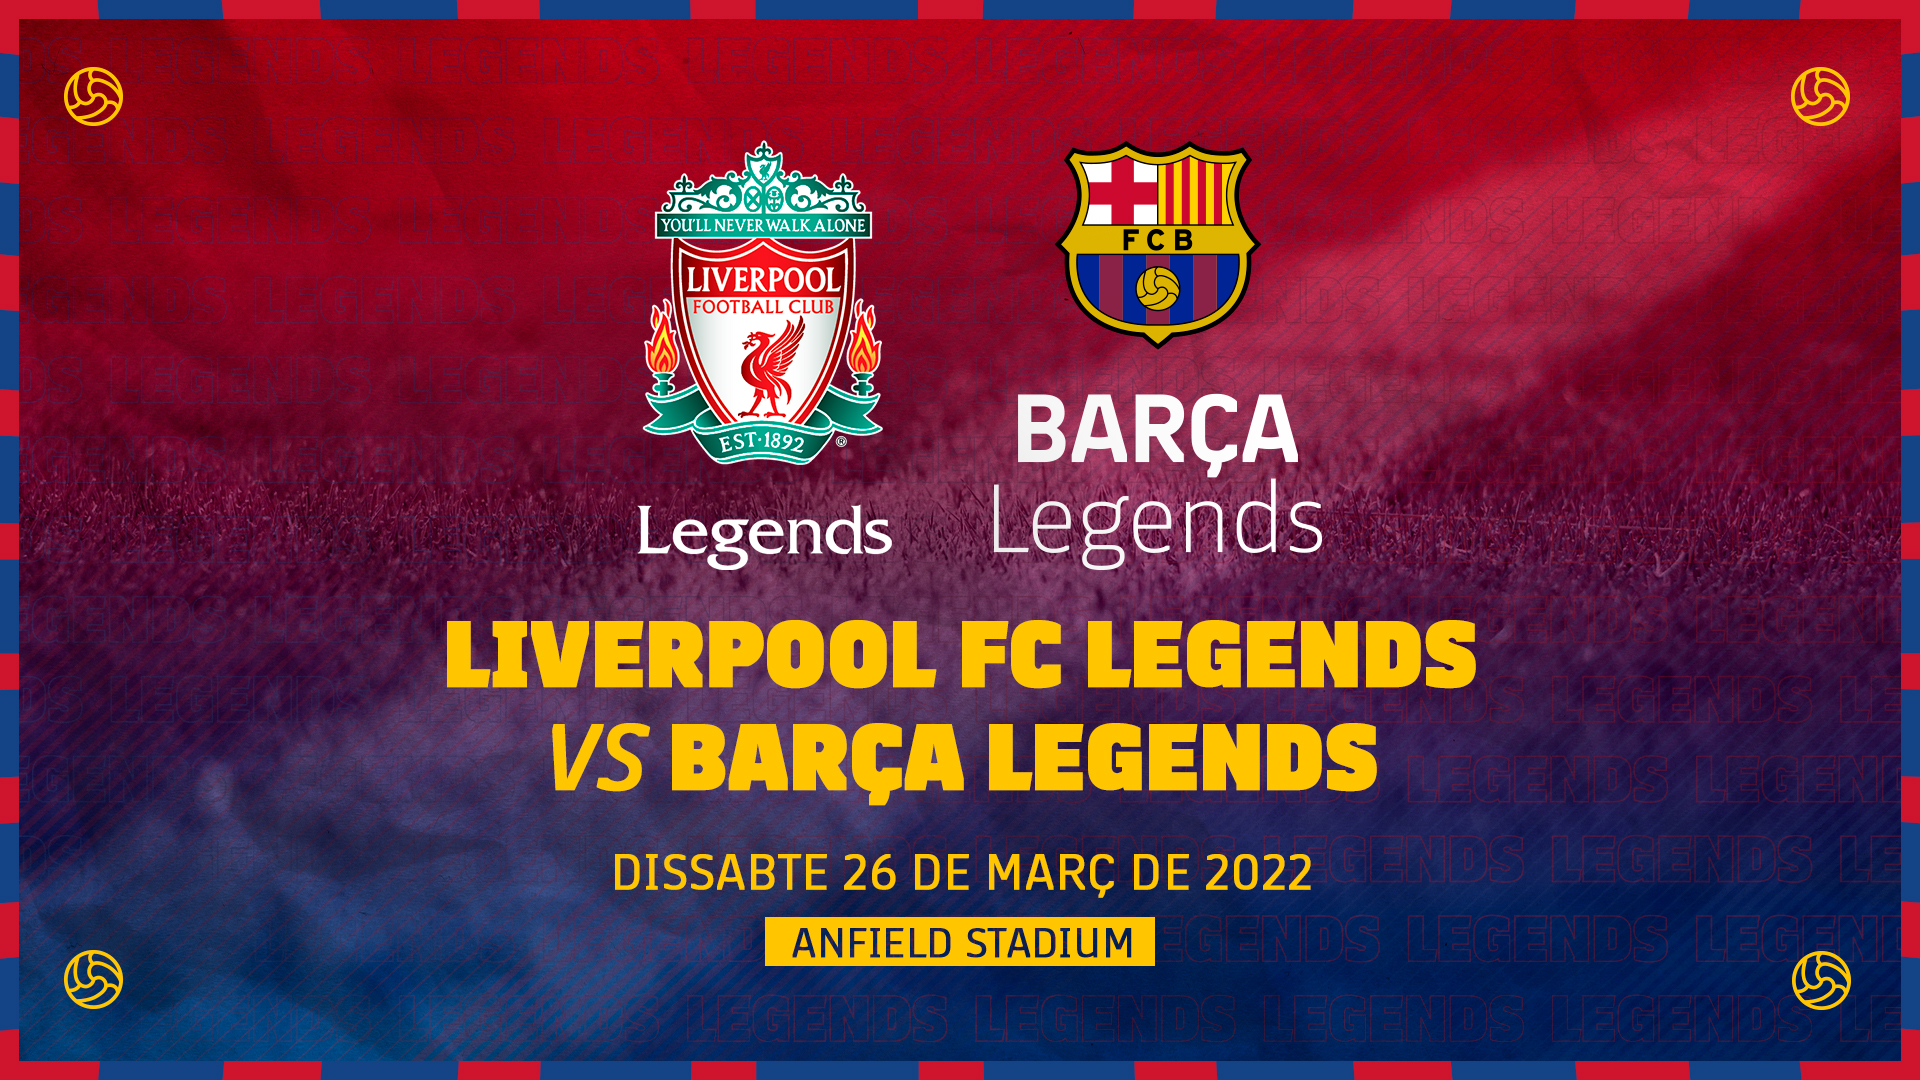 Liverpool barca legends legends vs Liverpool Legends